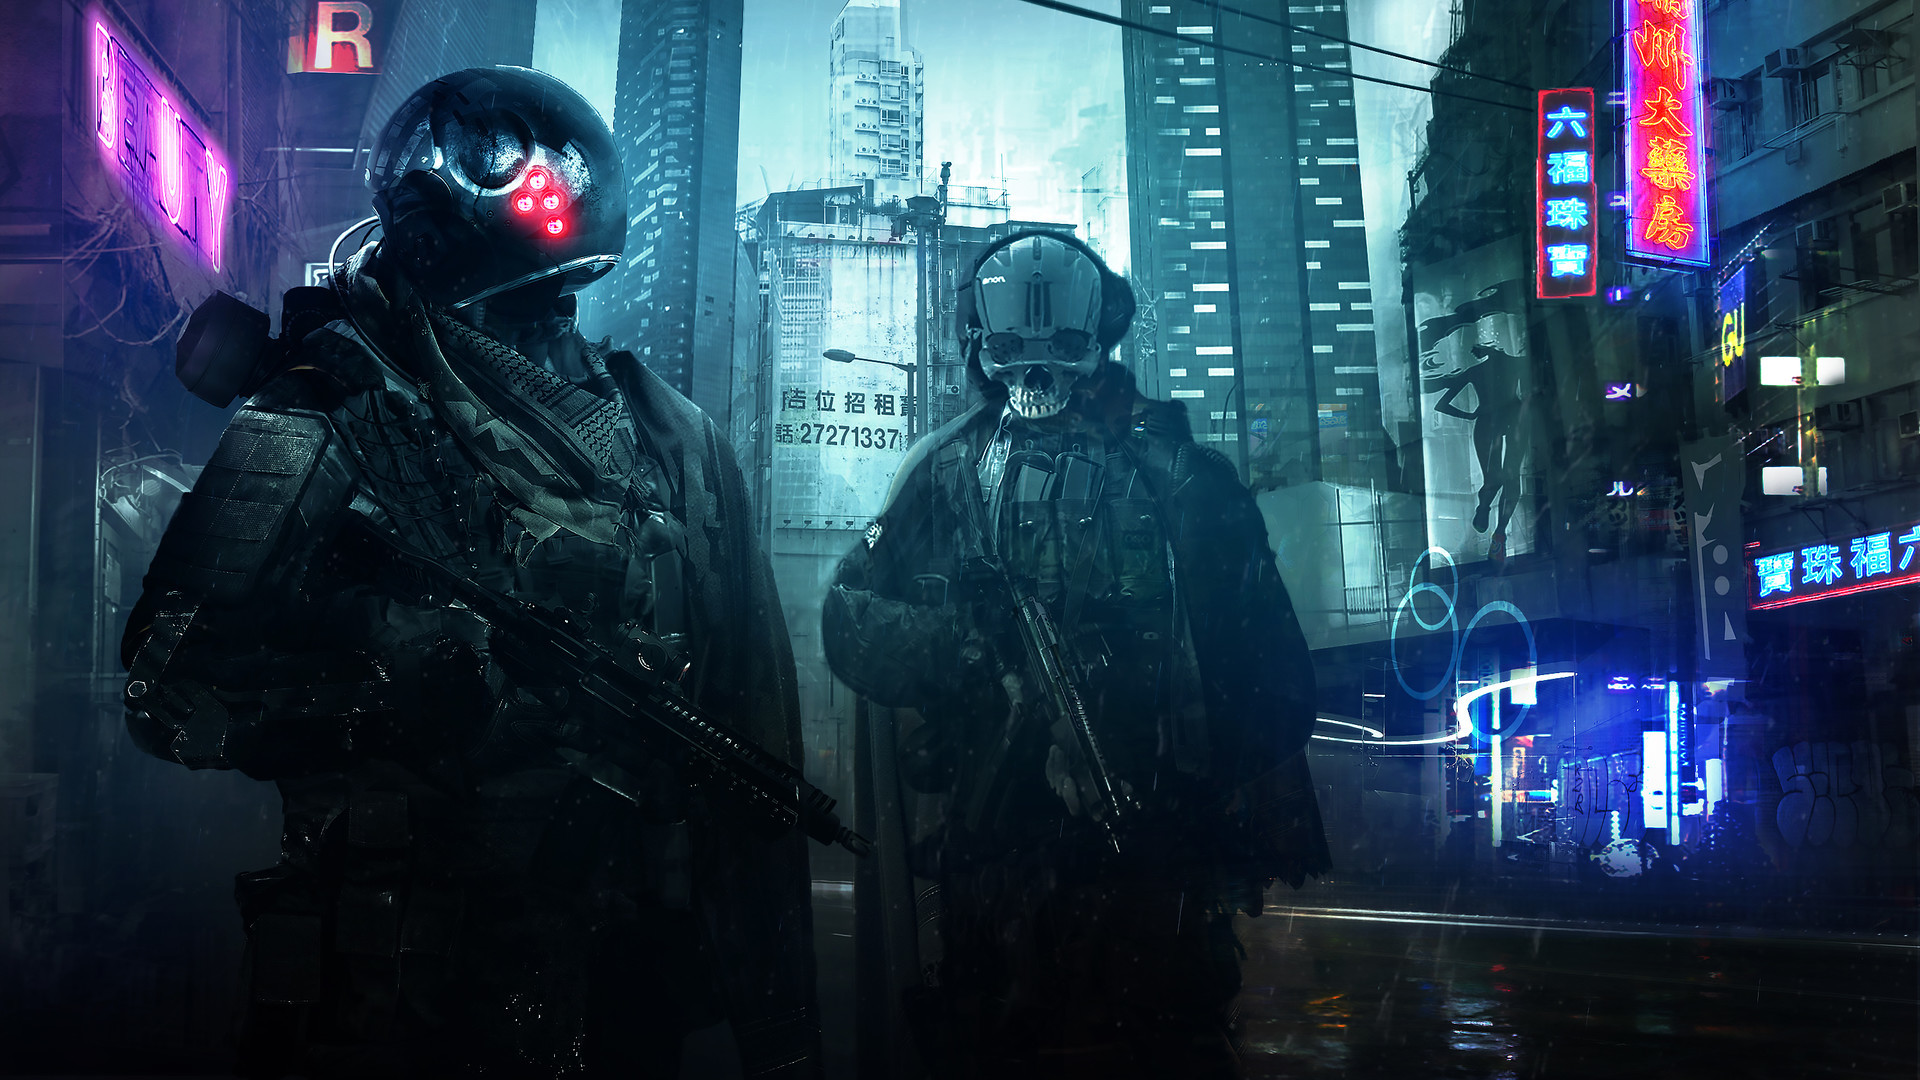 Cyberpunk Hd Wallpaper - Cyberpunk Soldiers Sci Fi , HD Wallpaper & Backgrounds